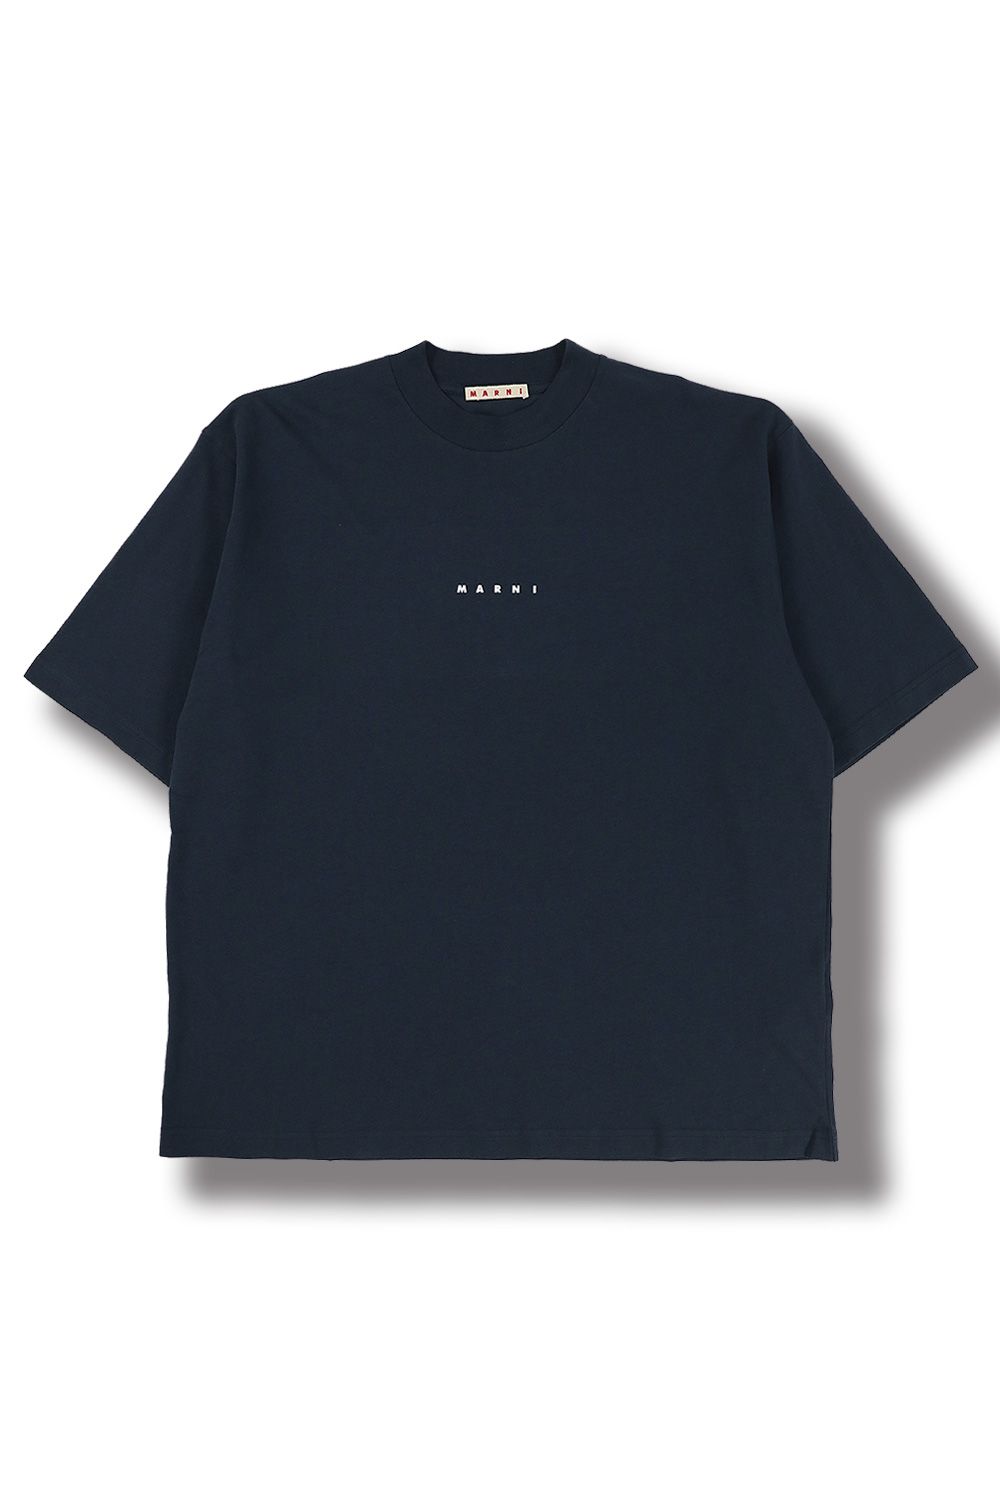 ラスト1点【MARNI】マルニ ロゴ Tシャツ 黒 ブラック